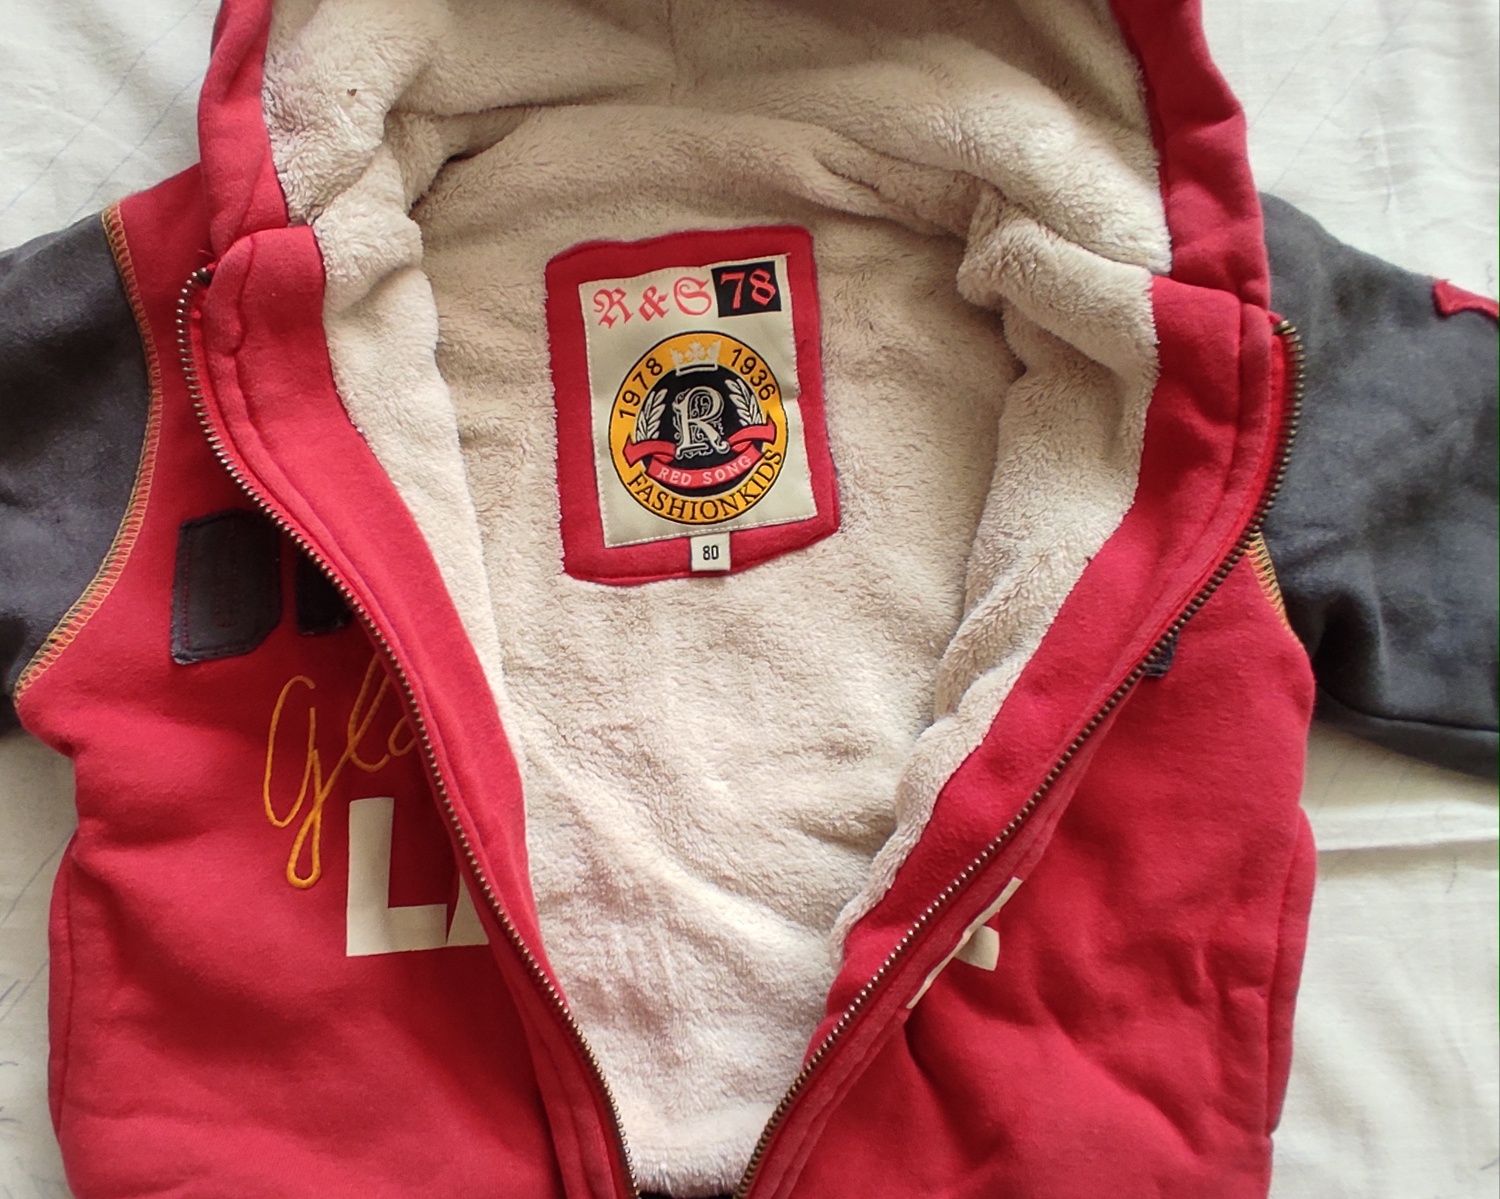 Продам фирменную куртку толстовку на ребенка 2-3 лет, рост 80-86 см